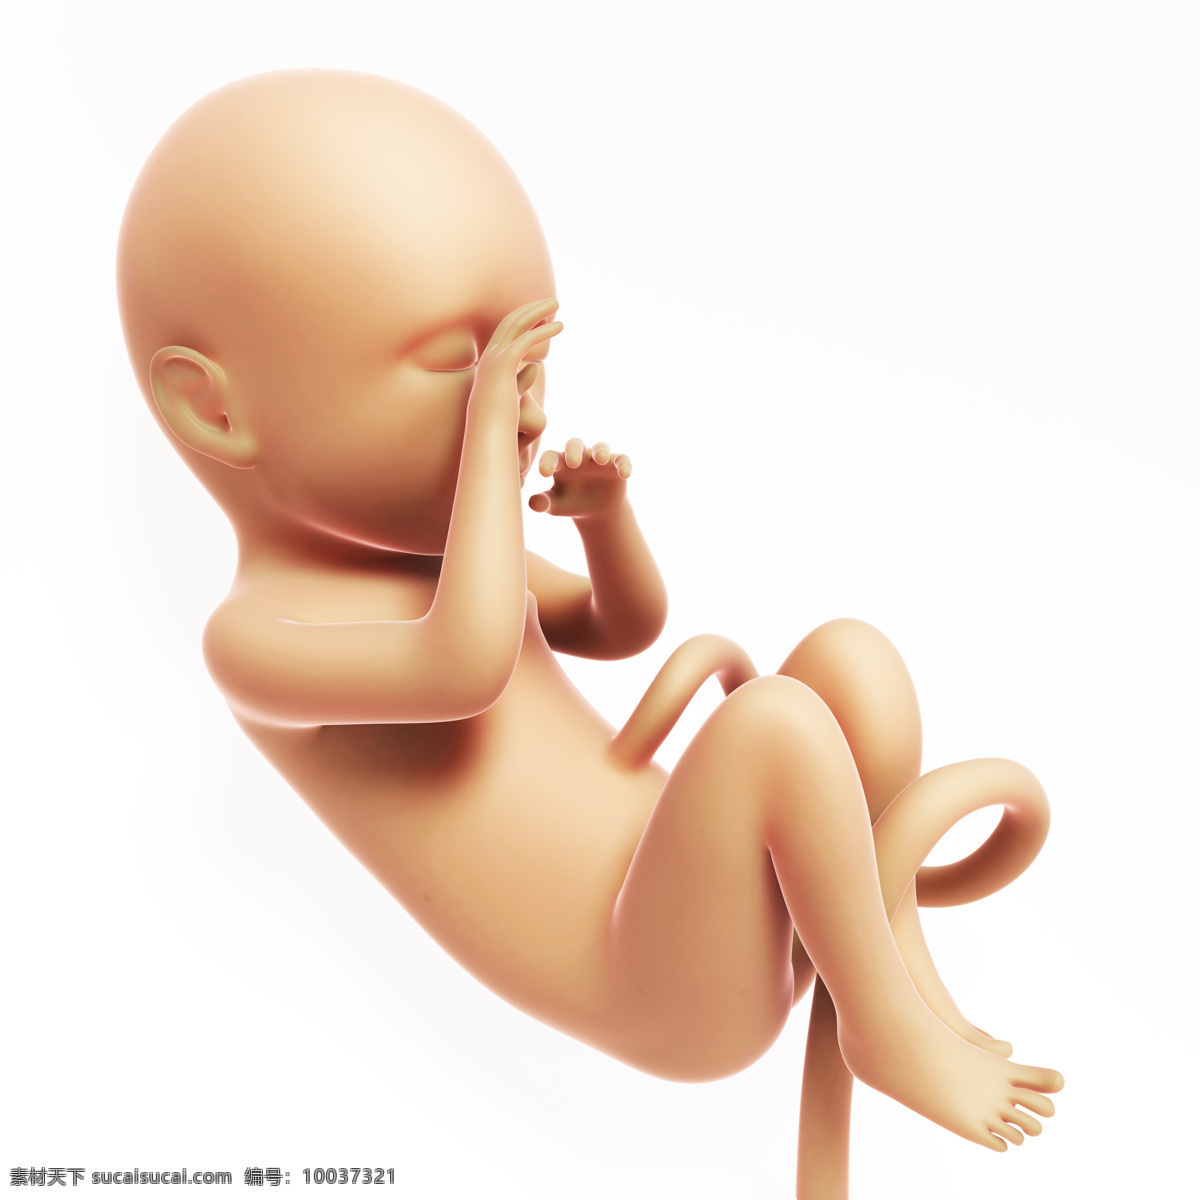 成形 胎儿 脐带 婴儿 发育 孕育 胚胎发育 儿童图片 人物图片